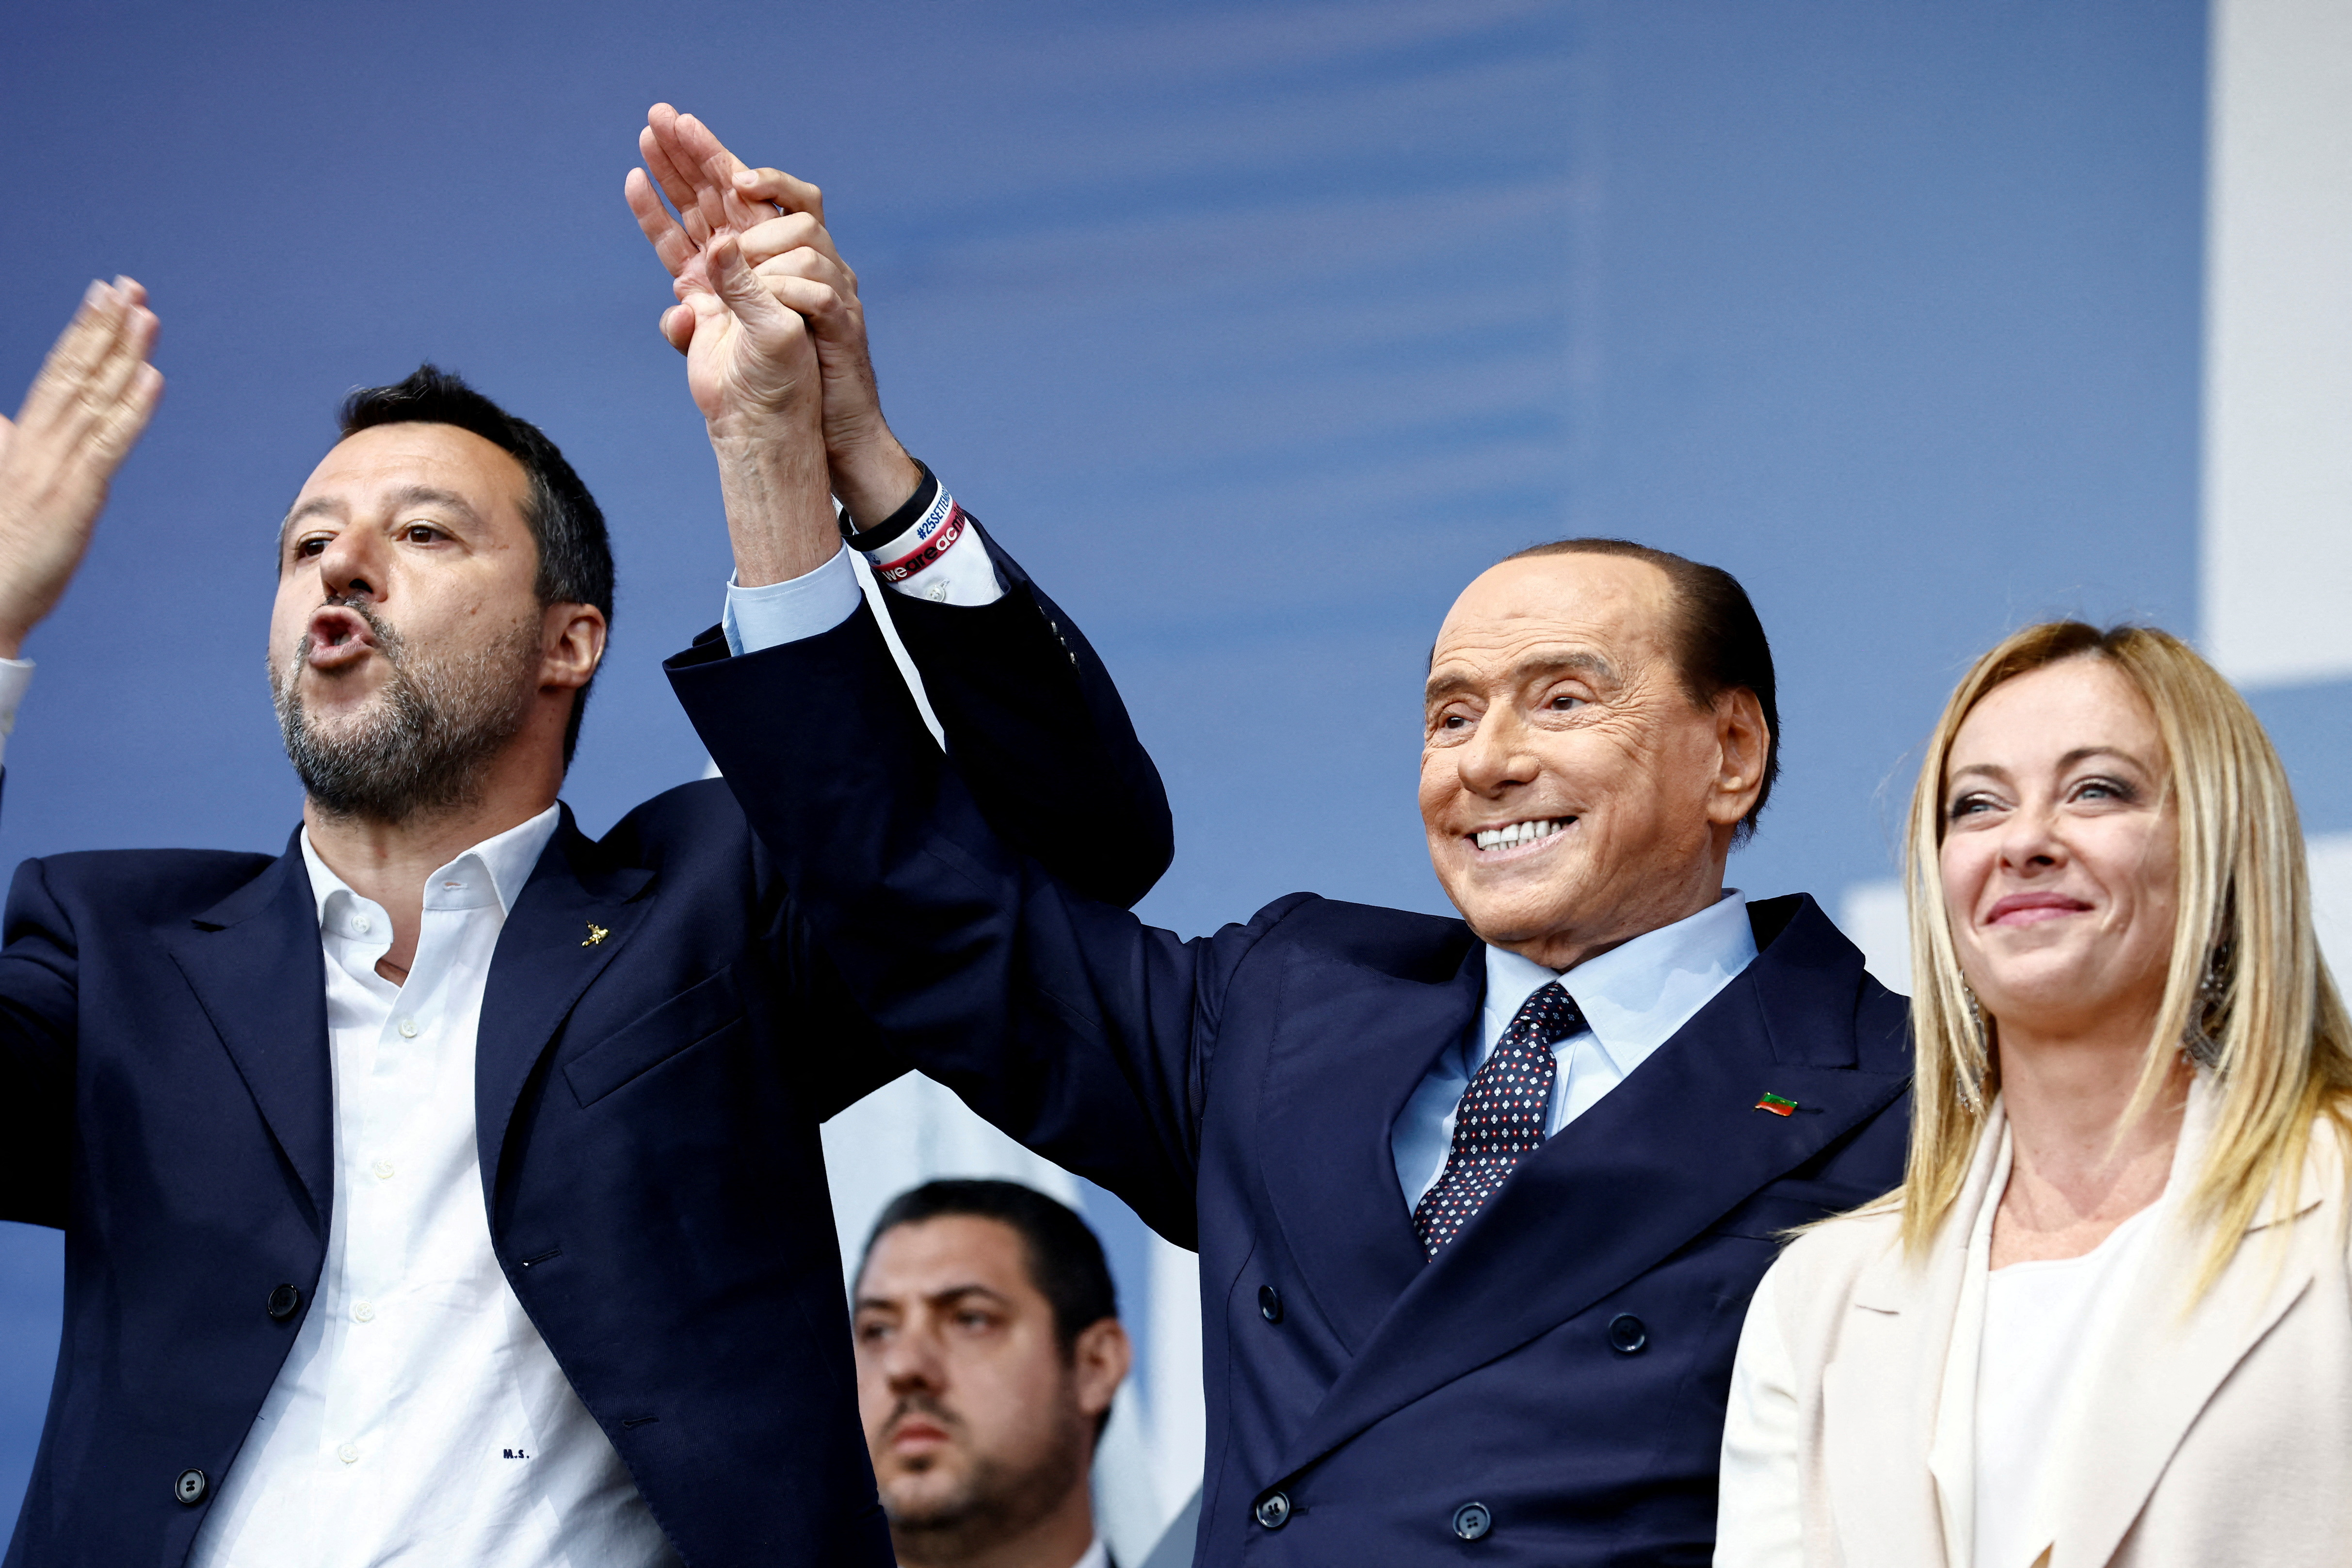 Salvini, Berlusconi y Meloni. Detrás de los abrazos y las sonrisas, la coalición de derecha esconde profundas diferencias (REUTERS/Yara Nardi/archivo)